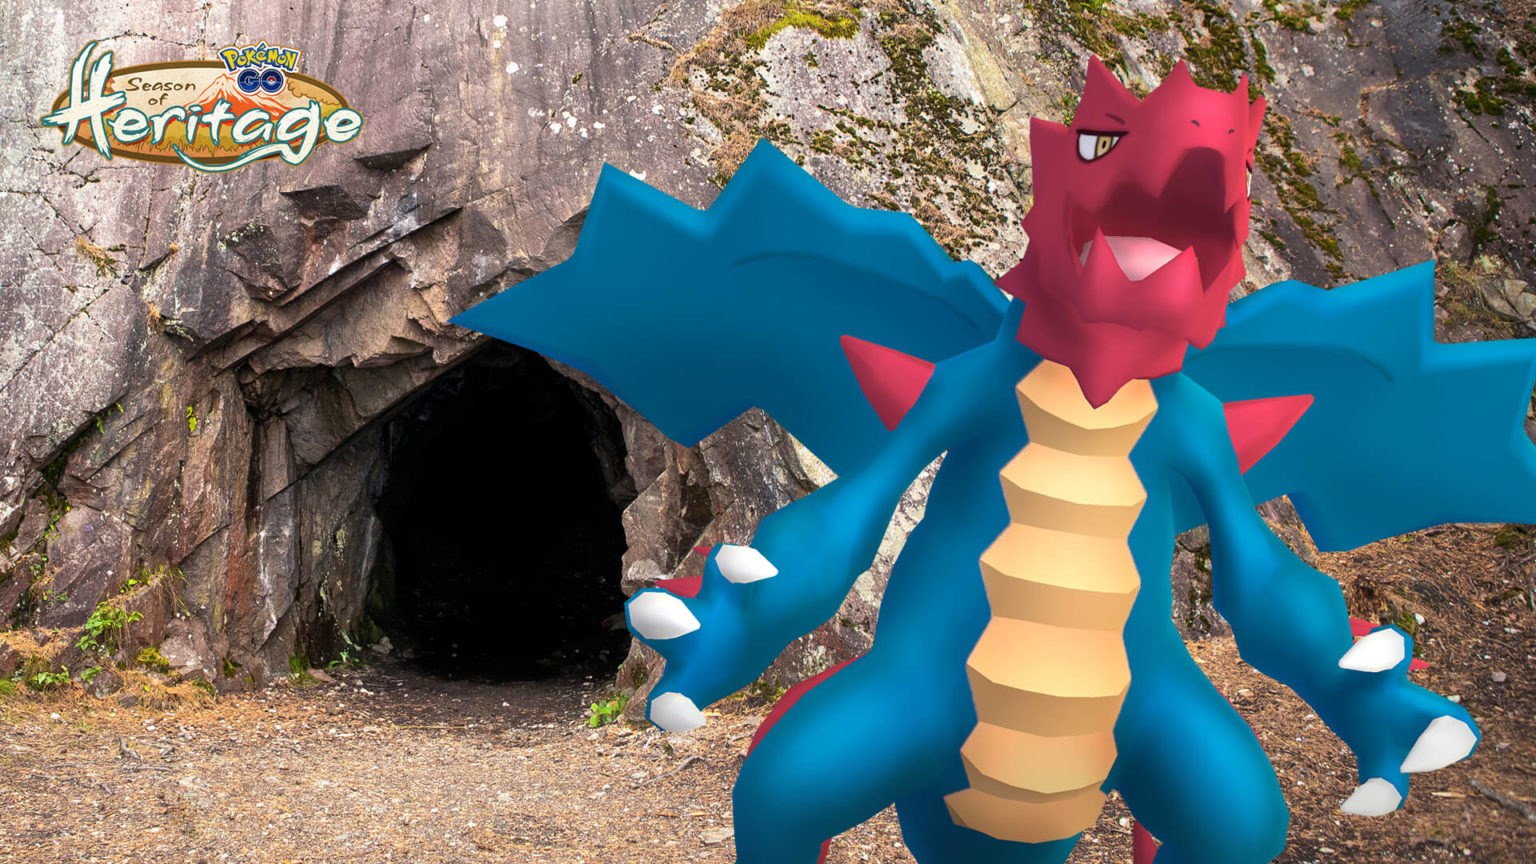 Pokémon GO - Dia de Incenso do Tipo Elétrico e Dragão